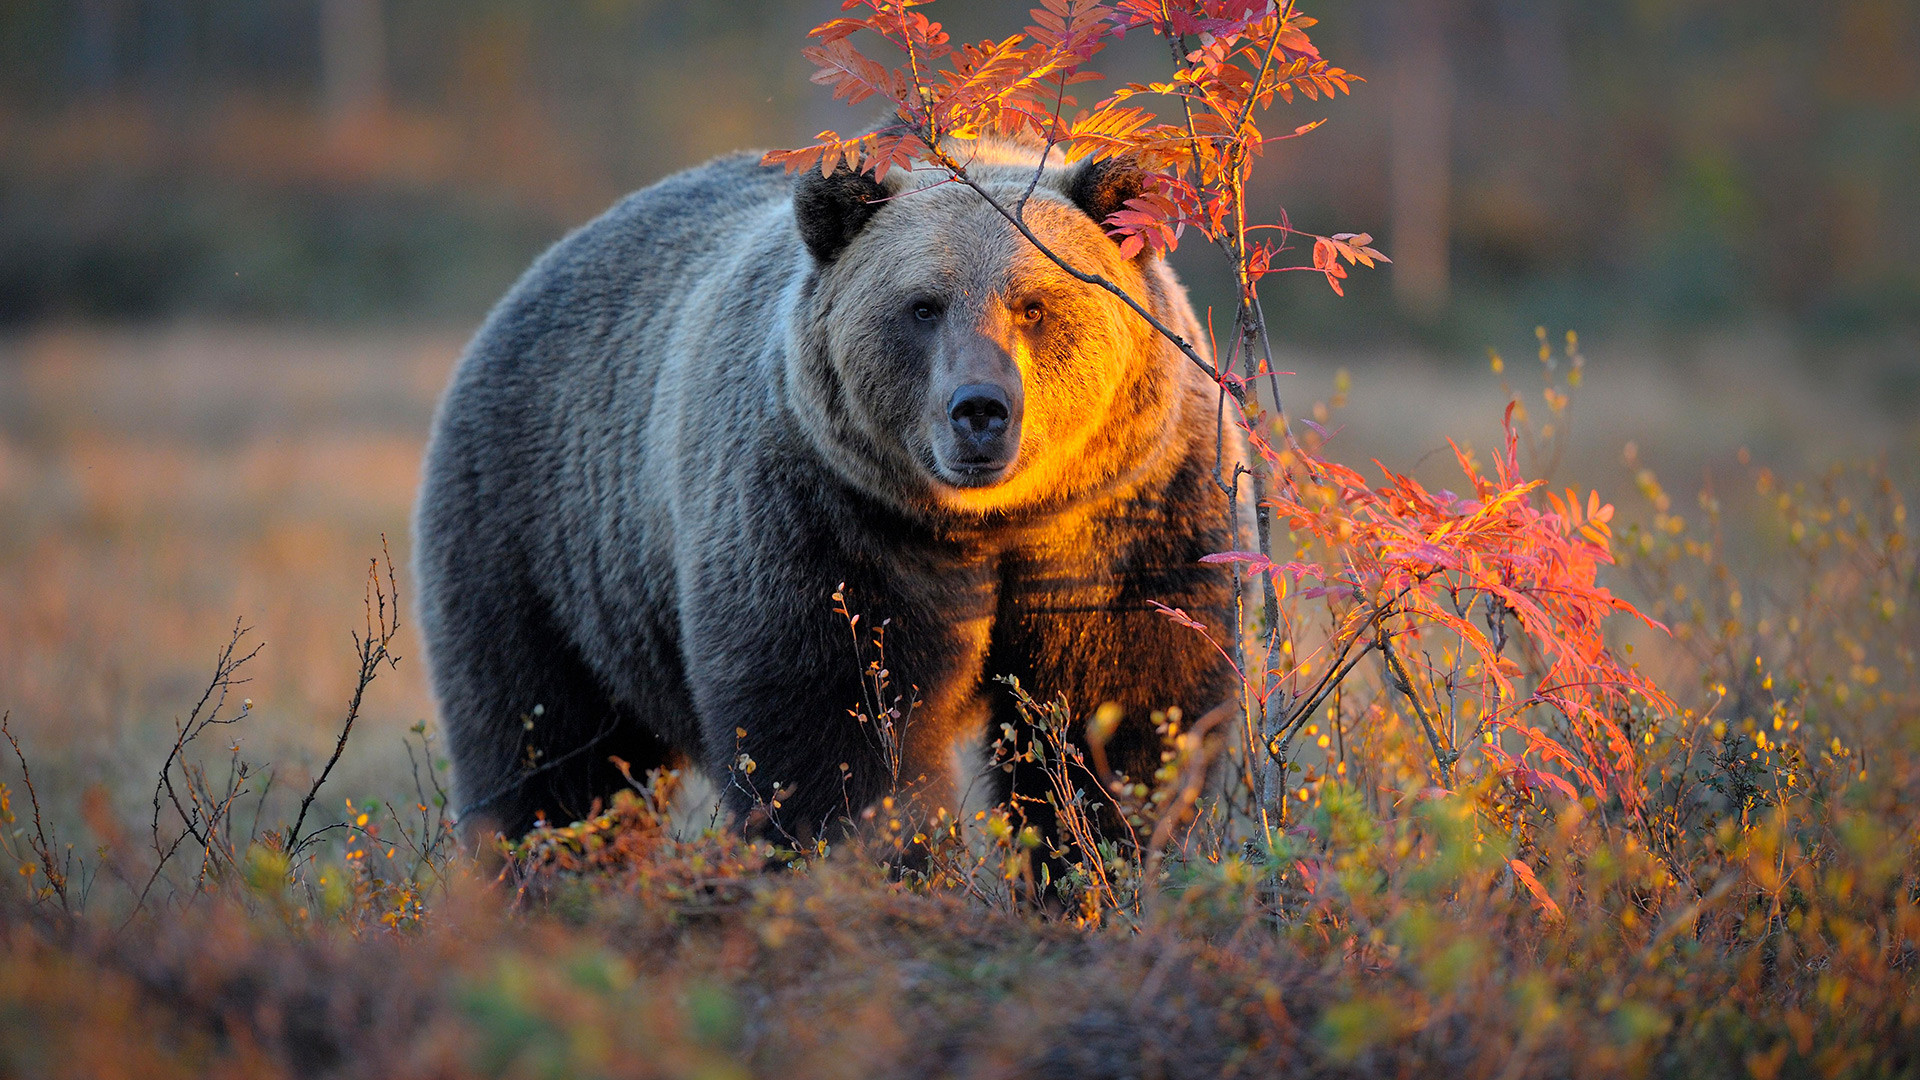 メス熊はわたしを土に埋め 食らいついてきた クマと遭遇し 生き延びた女性たち ロシア ビヨンド